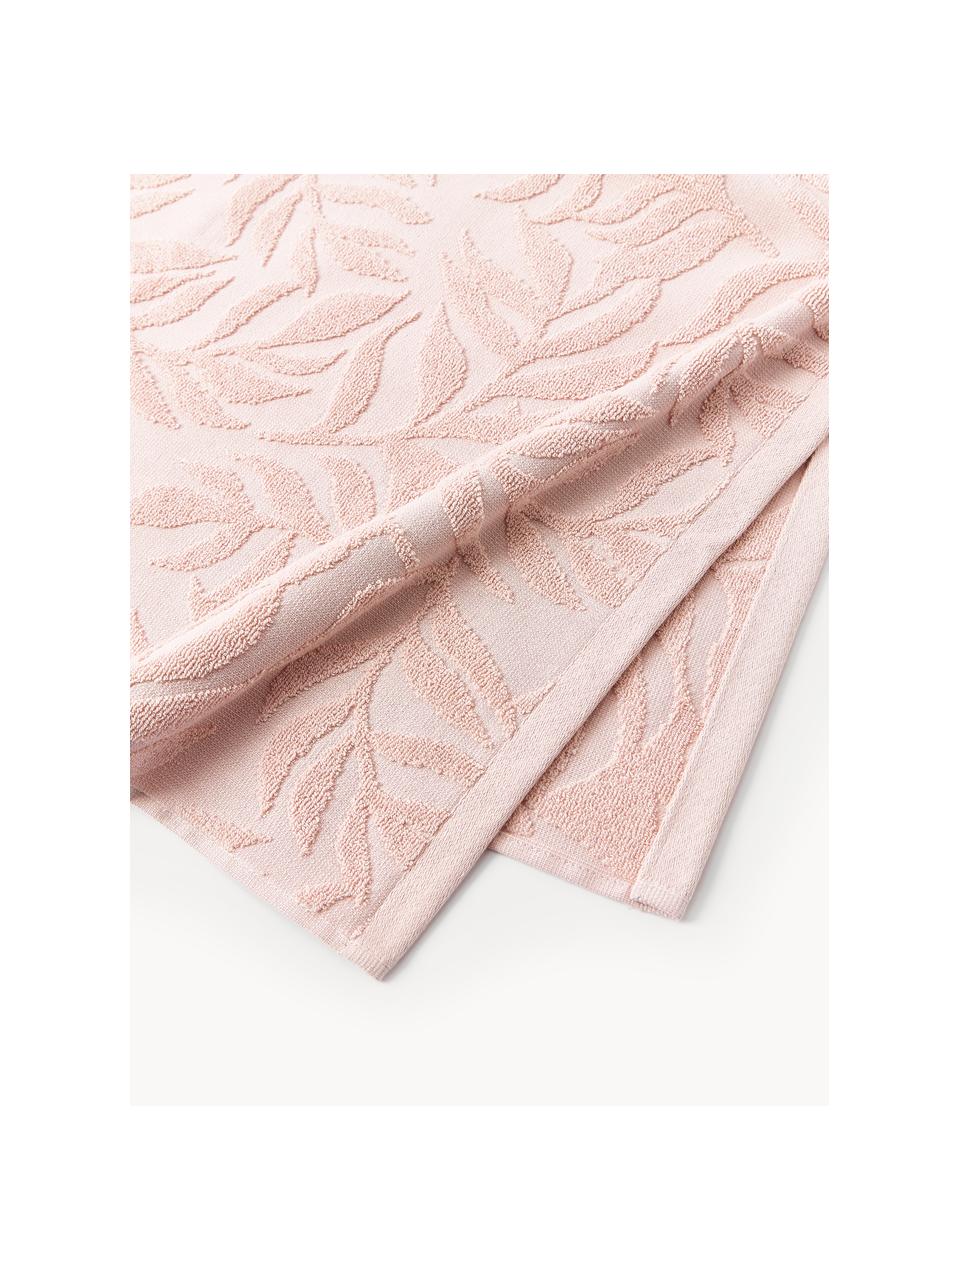 Set de toallas Leaf, tamaños diferentes, Rosa claro, Set de 3 (toalla tocador, toalla lavabo y toalla ducha)